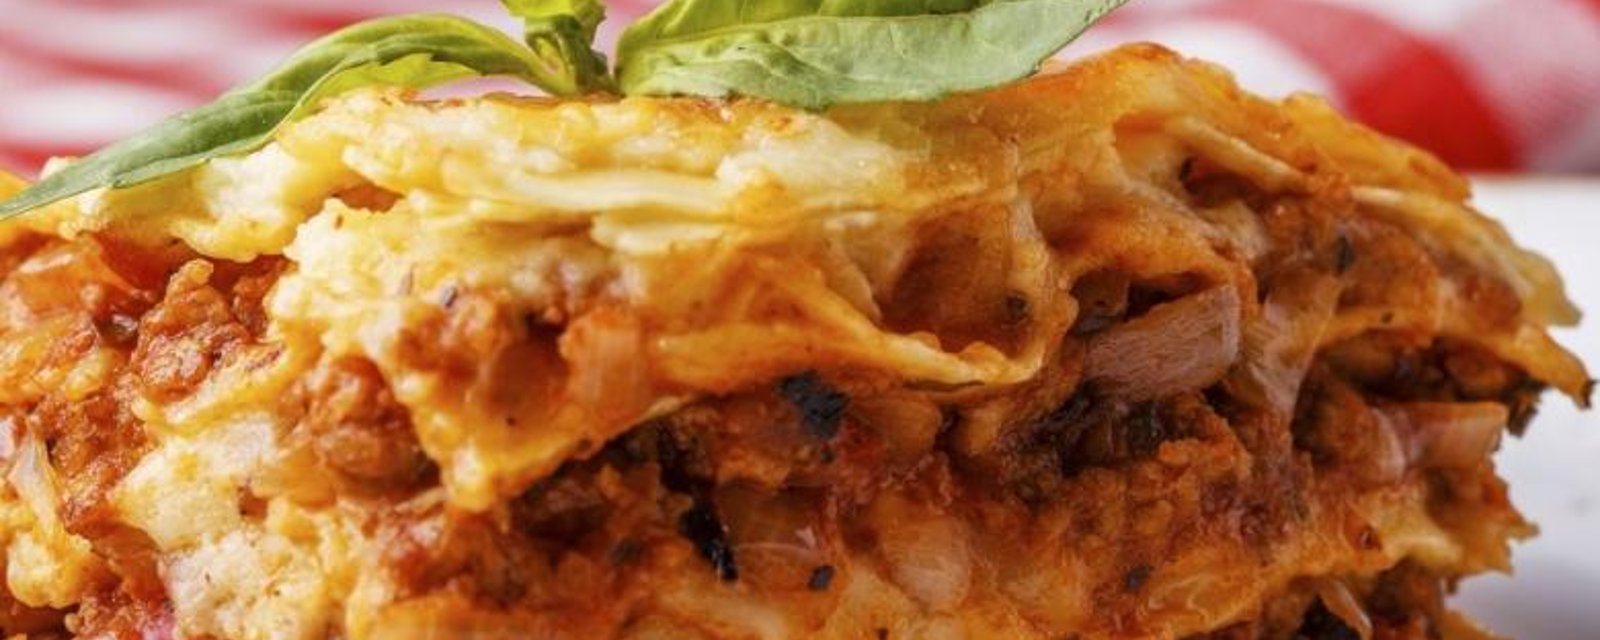 Cette lasagne contient un ingrédient MAGIQUE qui la rend si délicieuse